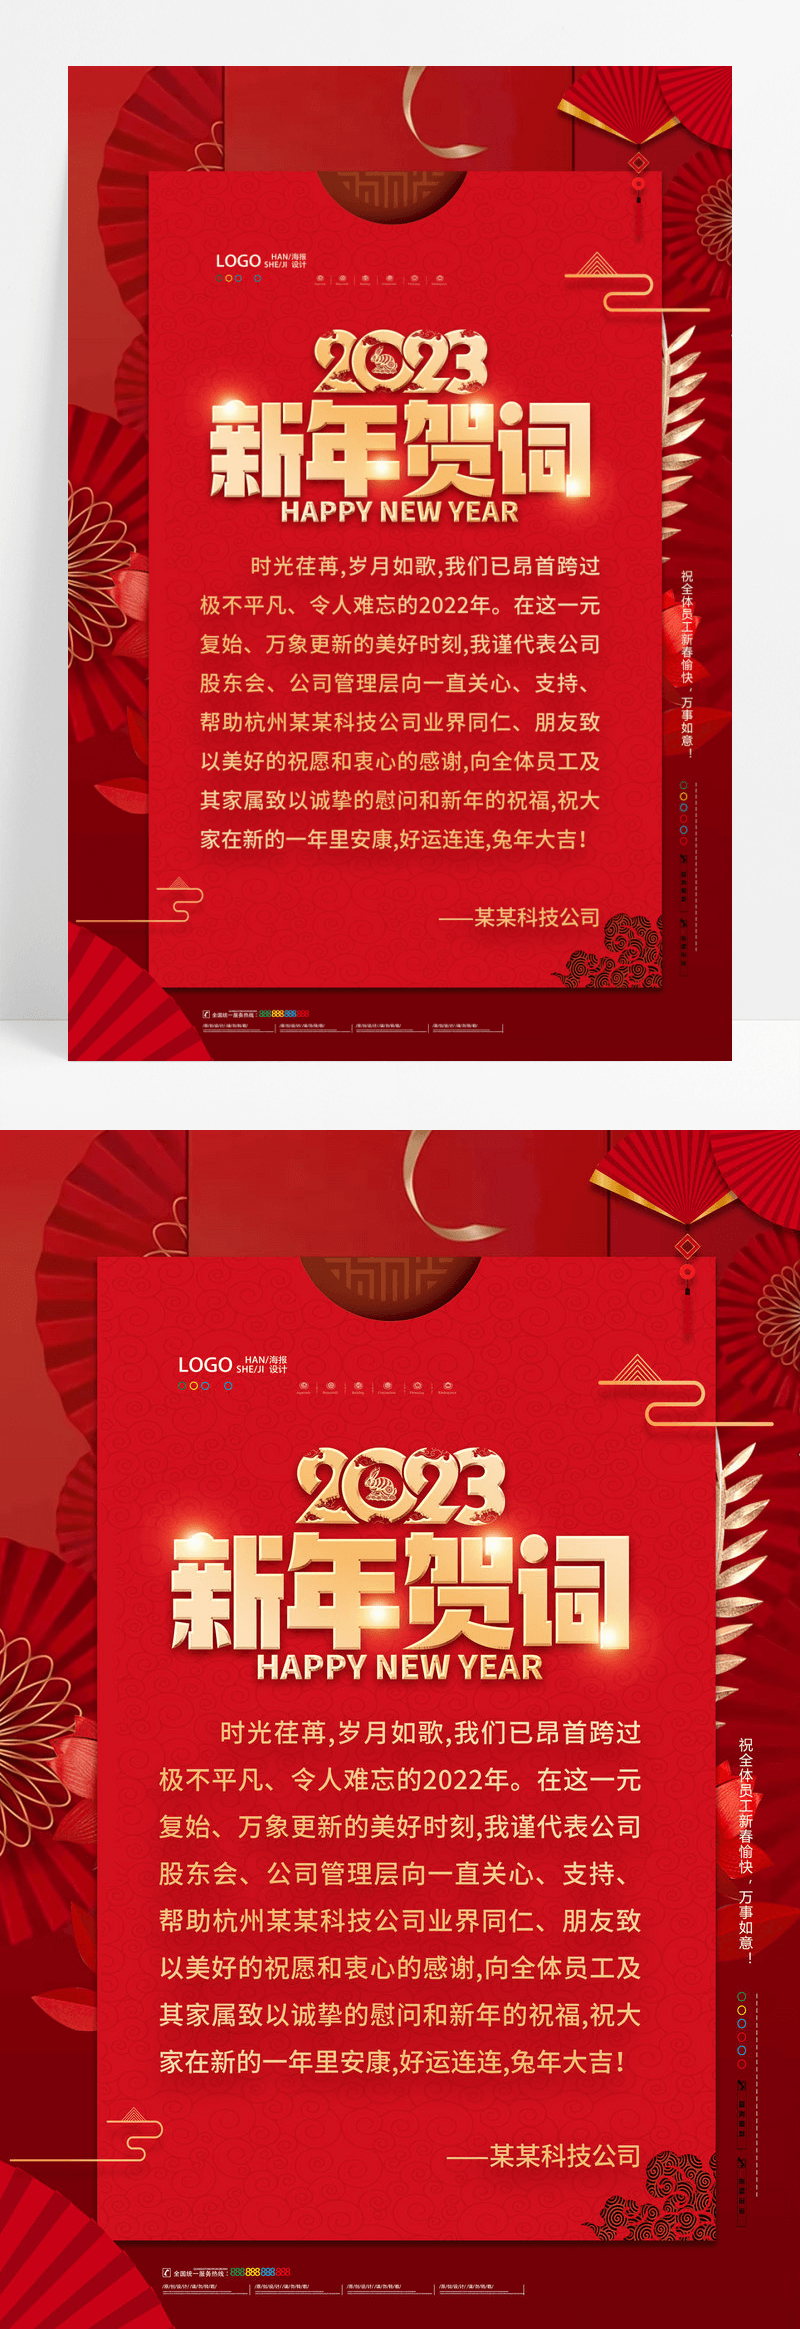 红色喜庆2023兔年新年贺词海报